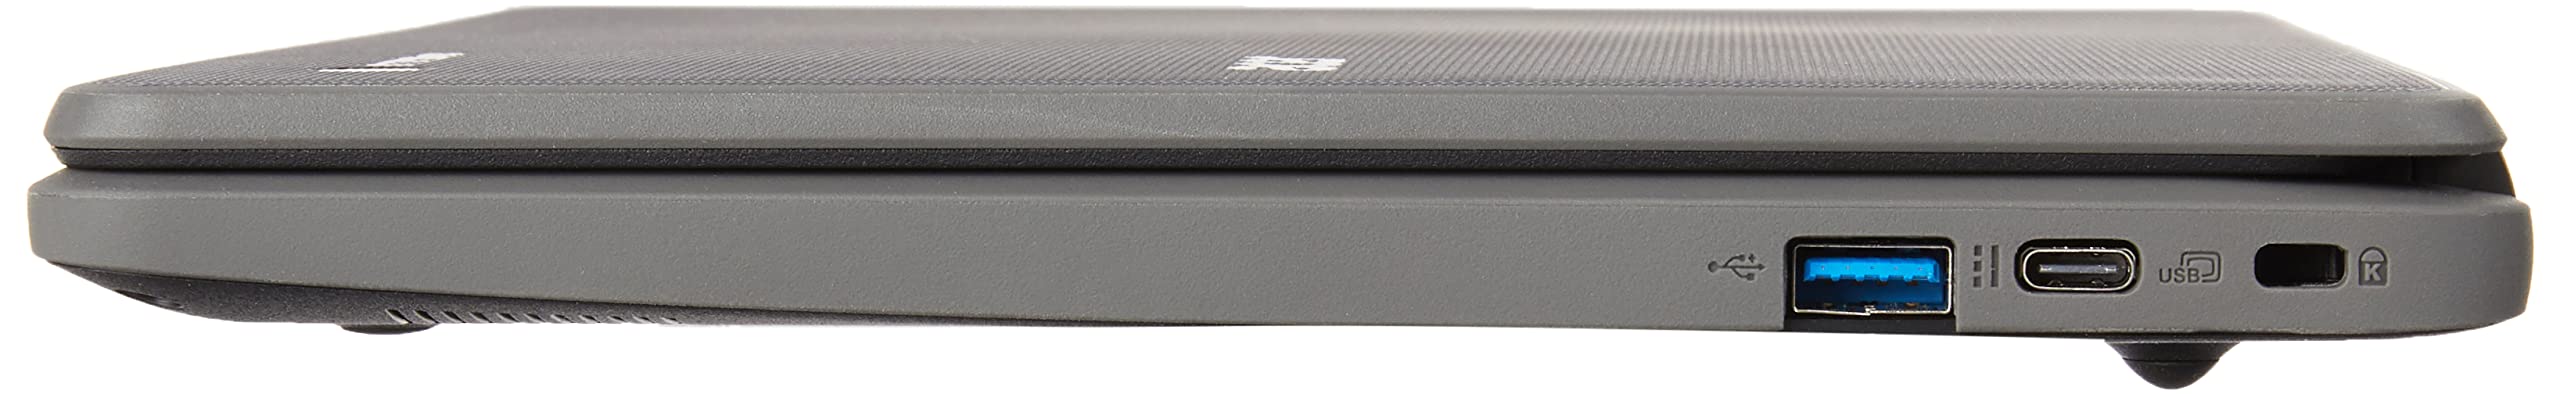 Acer Chromebook 511 C734 C734-C3V5 11.6